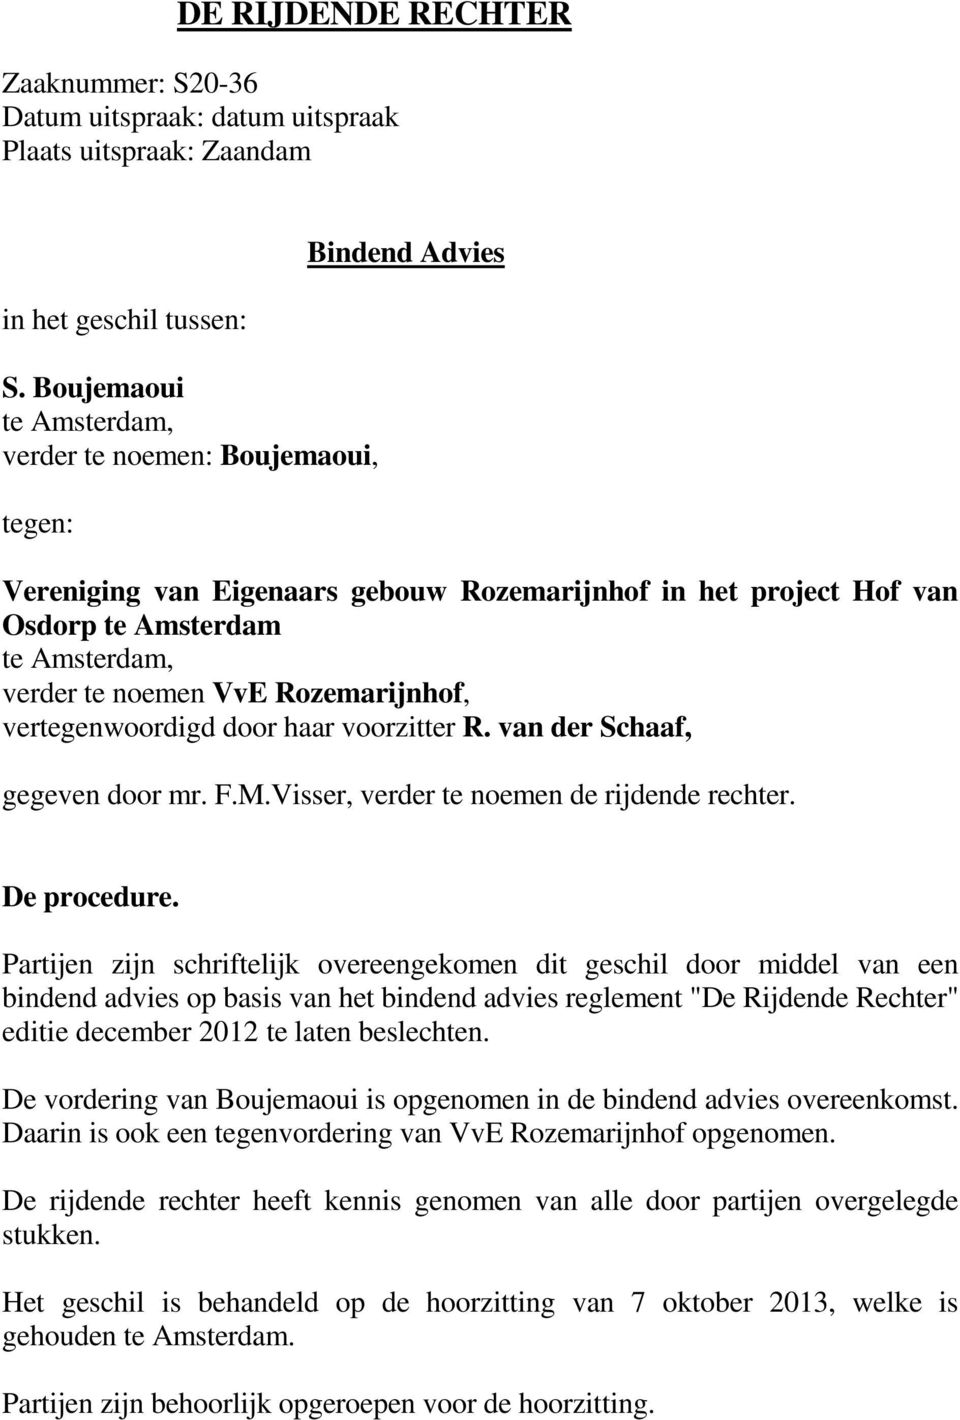 VvE Rozemarijnhof, vertegenwoordigd door haar voorzitter R. van der Schaaf, gegeven door mr. F.M.Visser, verder te noemen de rijdende rechter. De procedure.